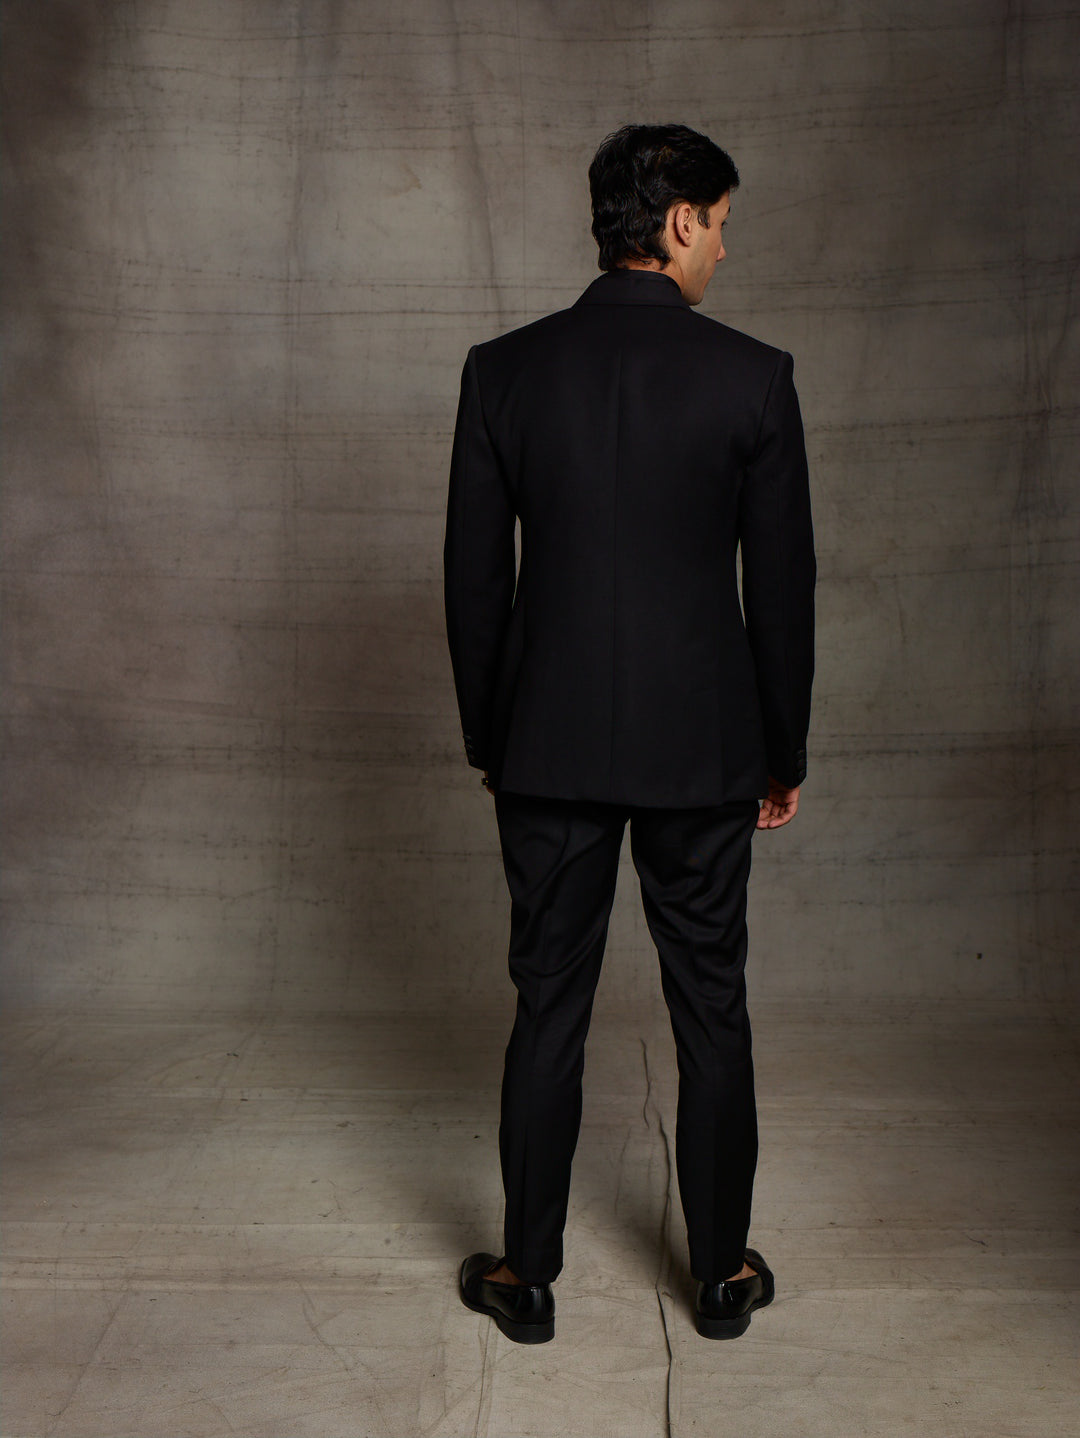 Black suit with contrast lapel